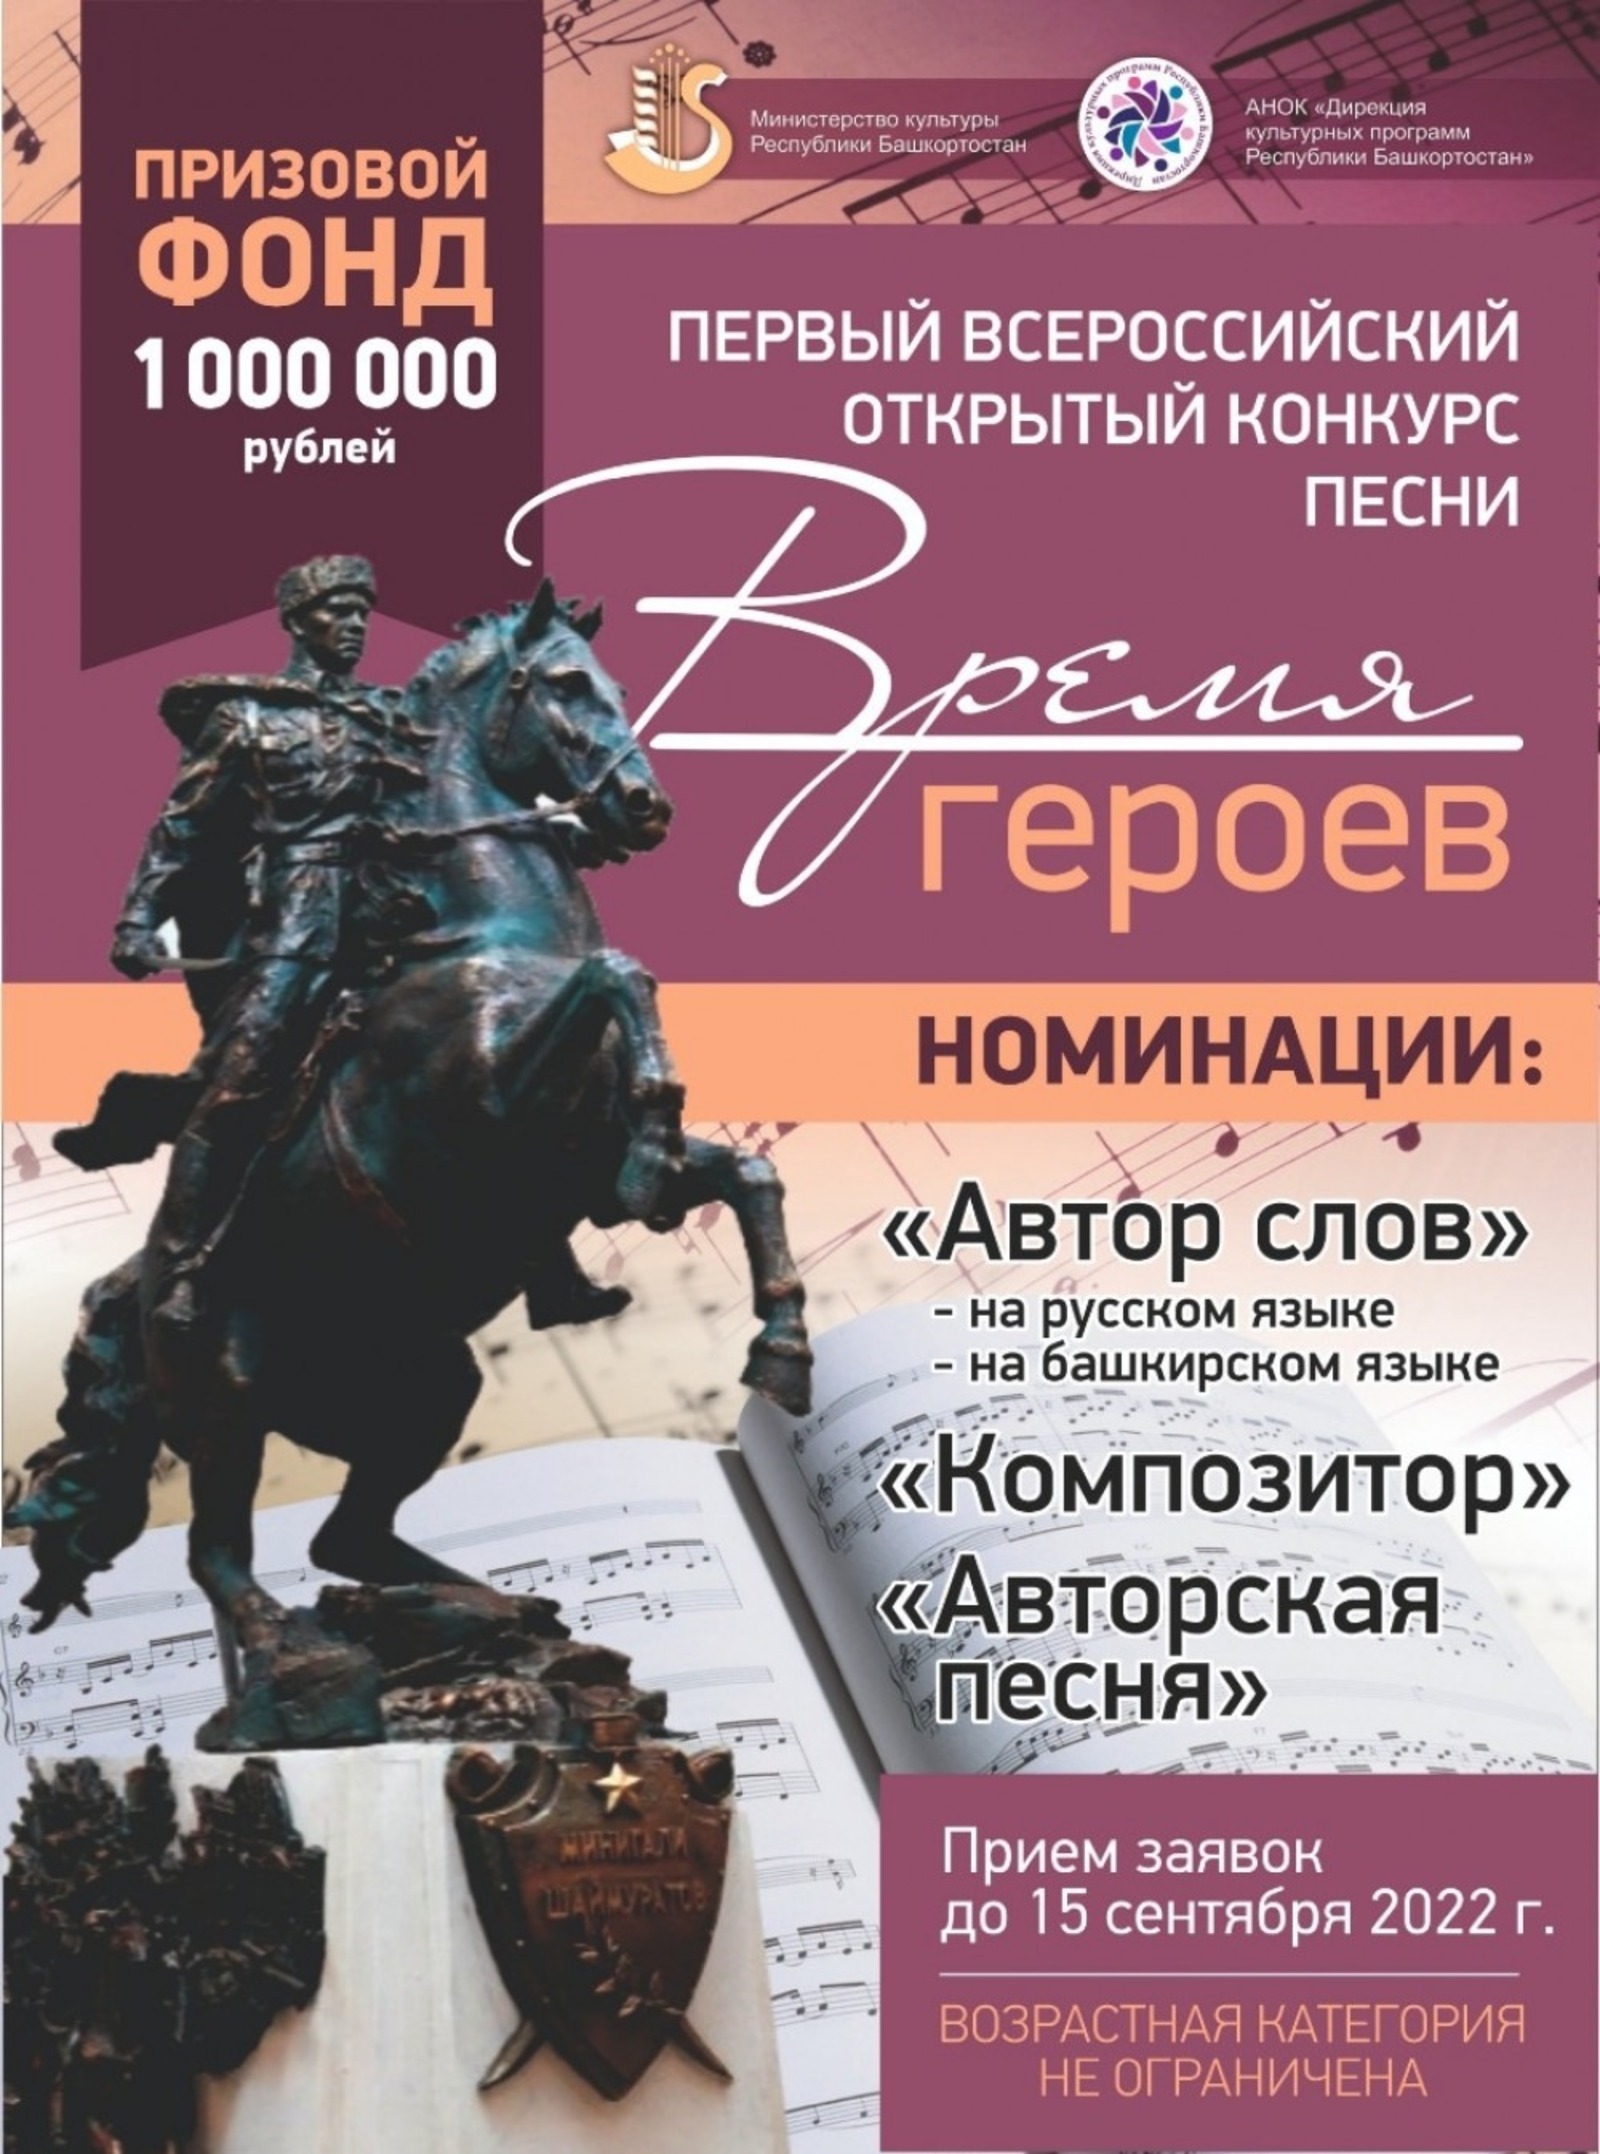 В Башкирии пройдет Всероссийский открытый конкурс песни «Время героев»